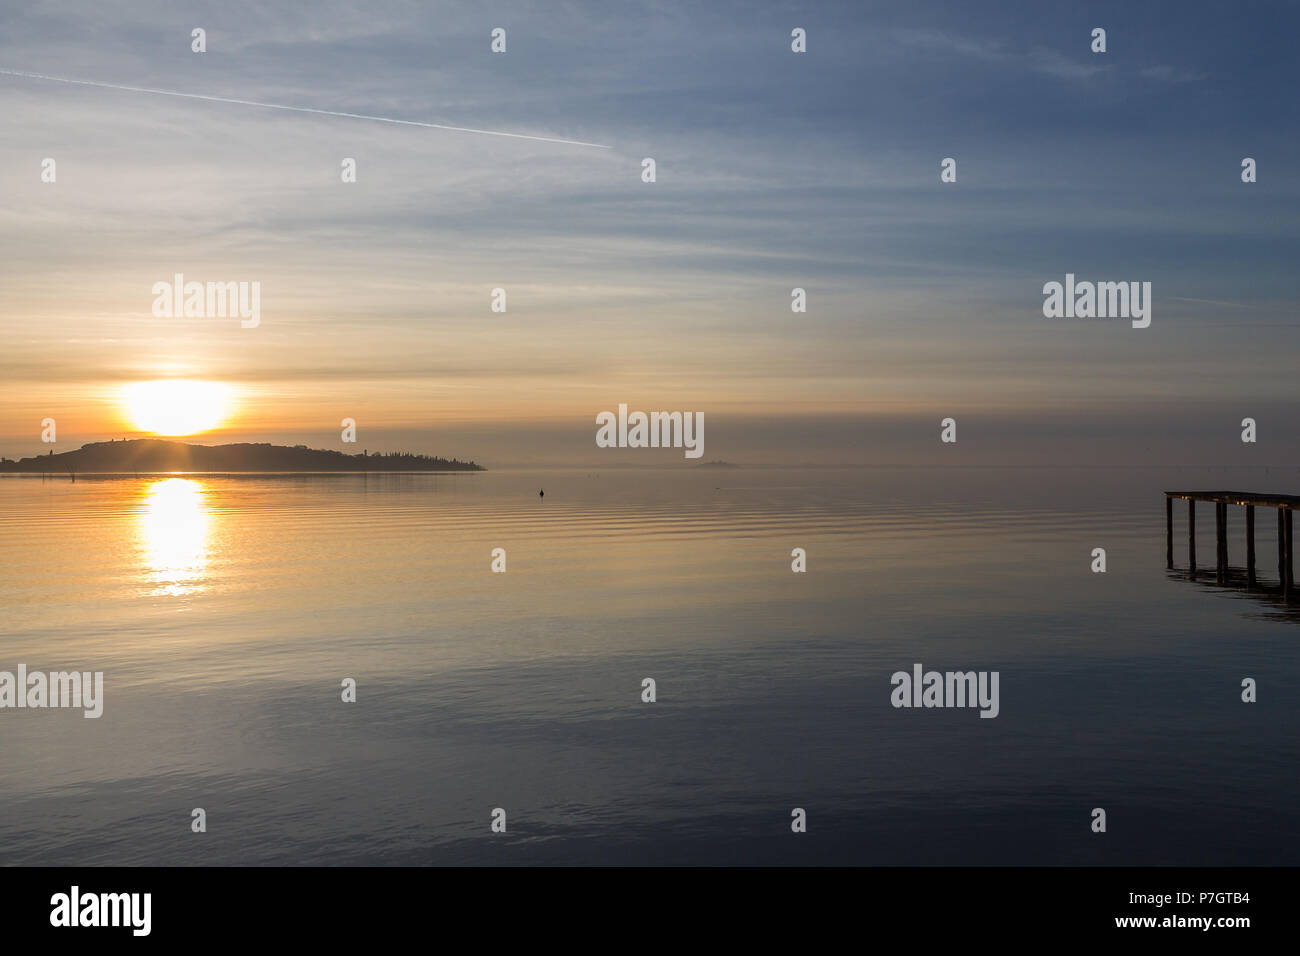 Una ripresa di un tramonto su un lago, con il sole che scende dietro un'isola e un molo sulla destra Foto Stock